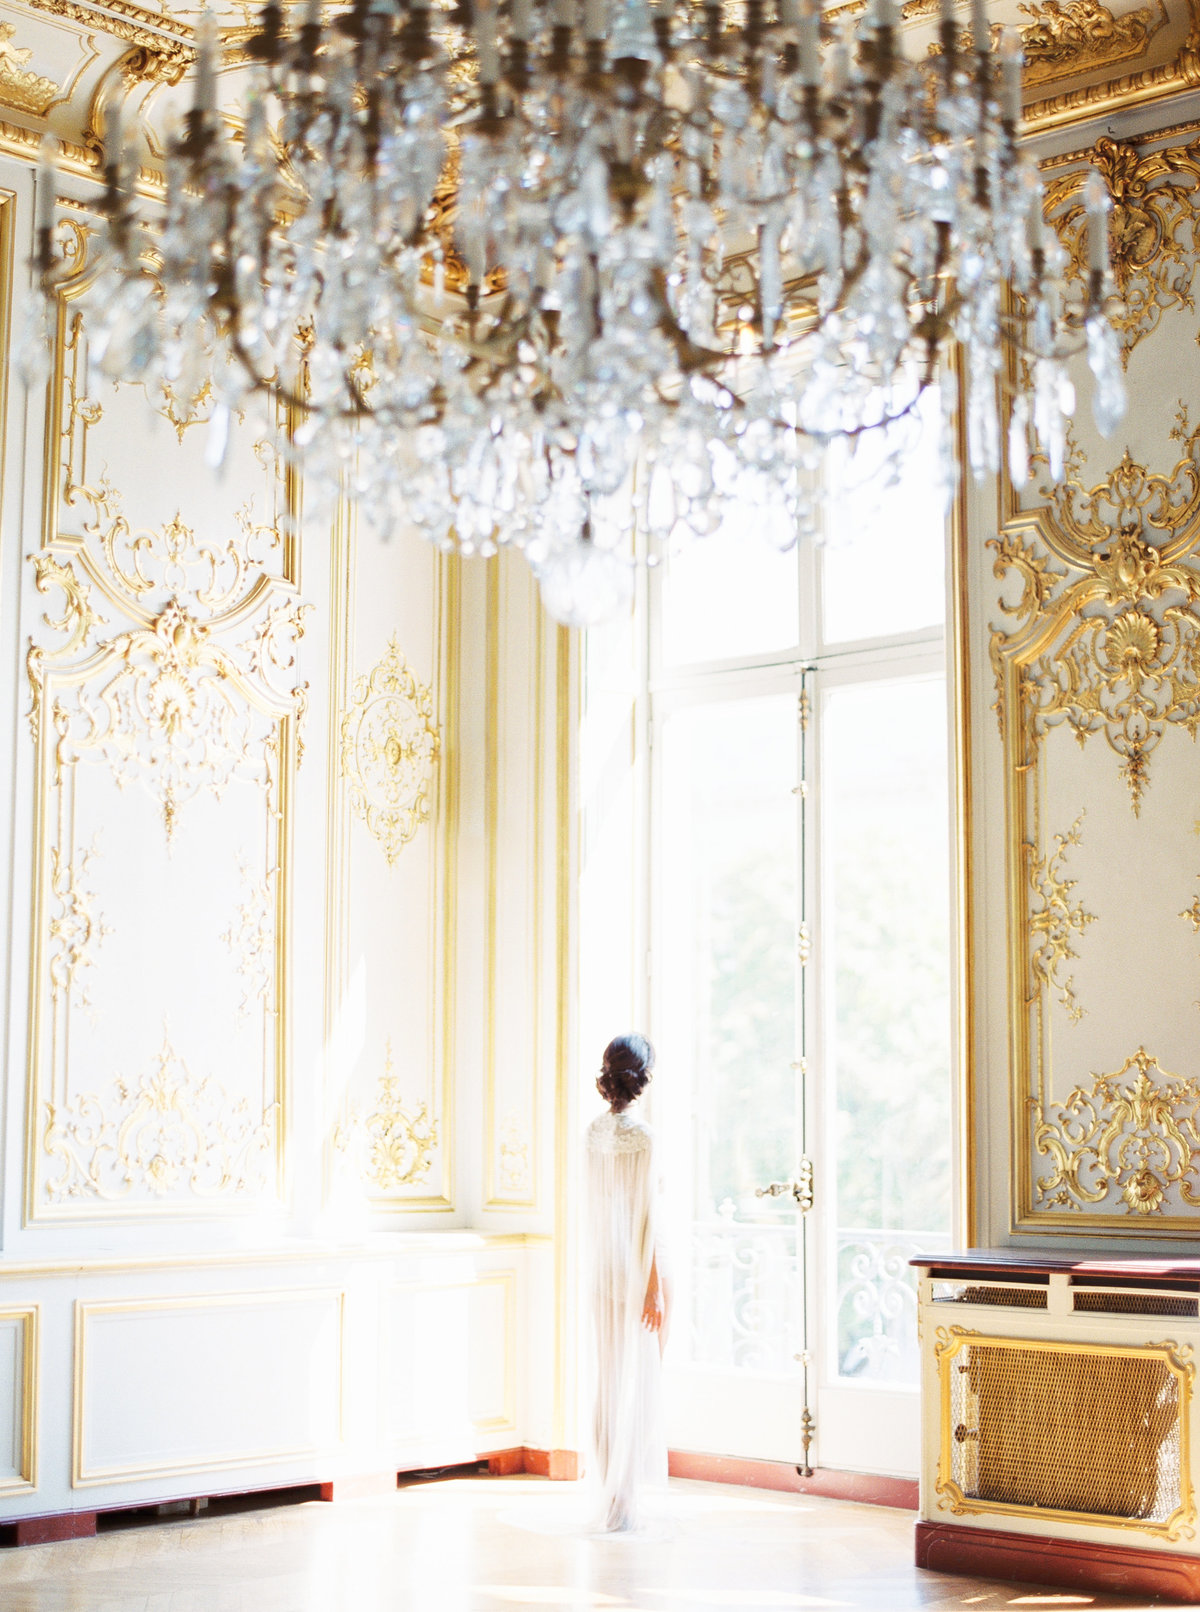 Hôtel Le Marois Wedding in Paris, France